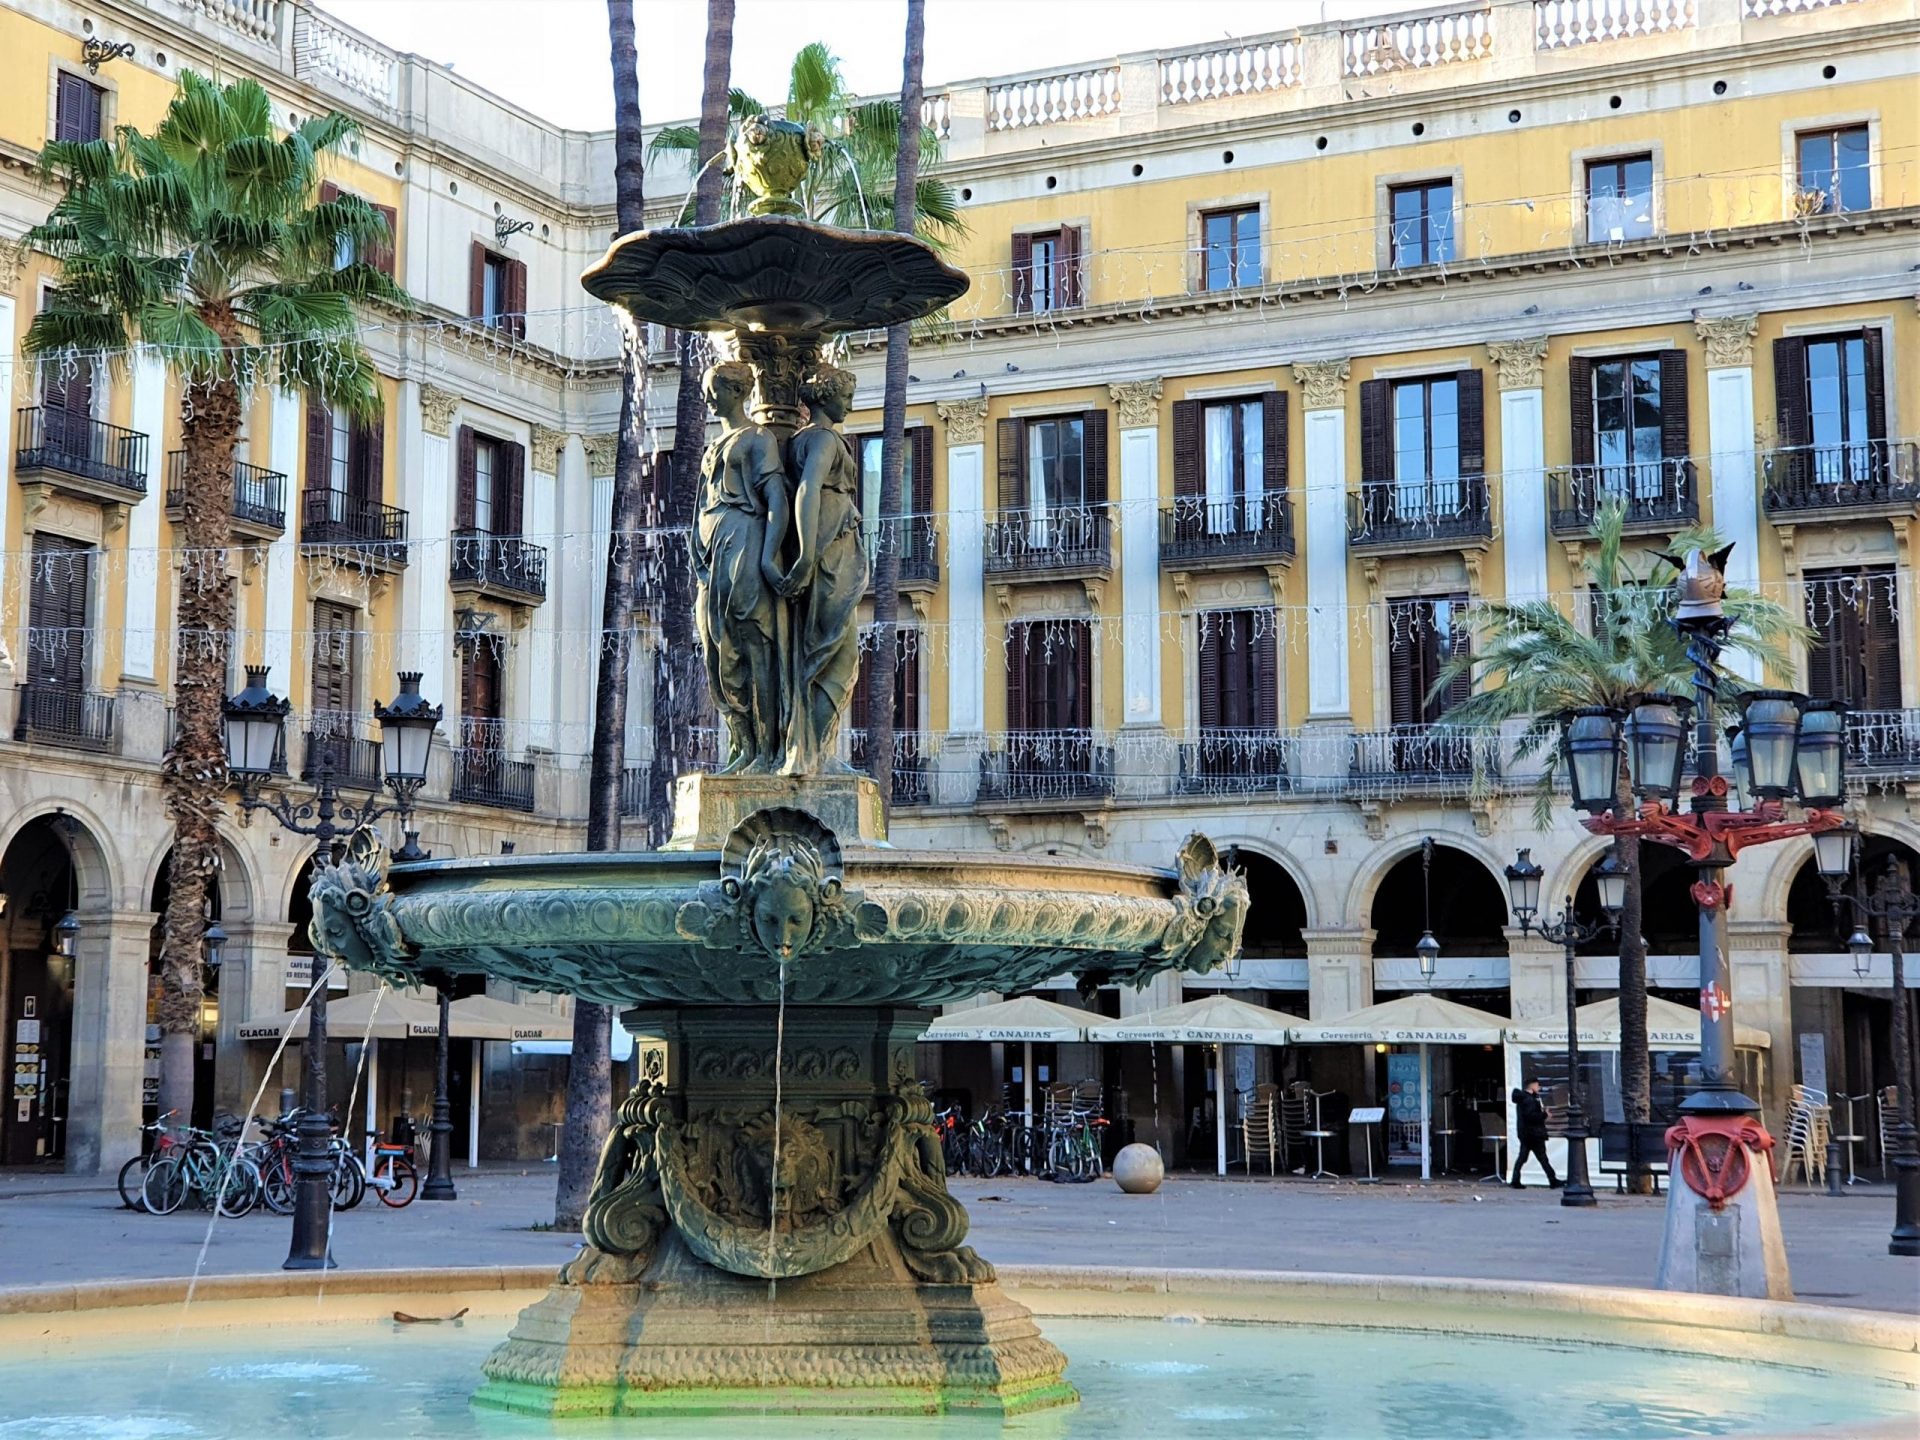 La fontaine et les lampadaires de la Plaça Reial, dans le quartier gothique de Barcelone.